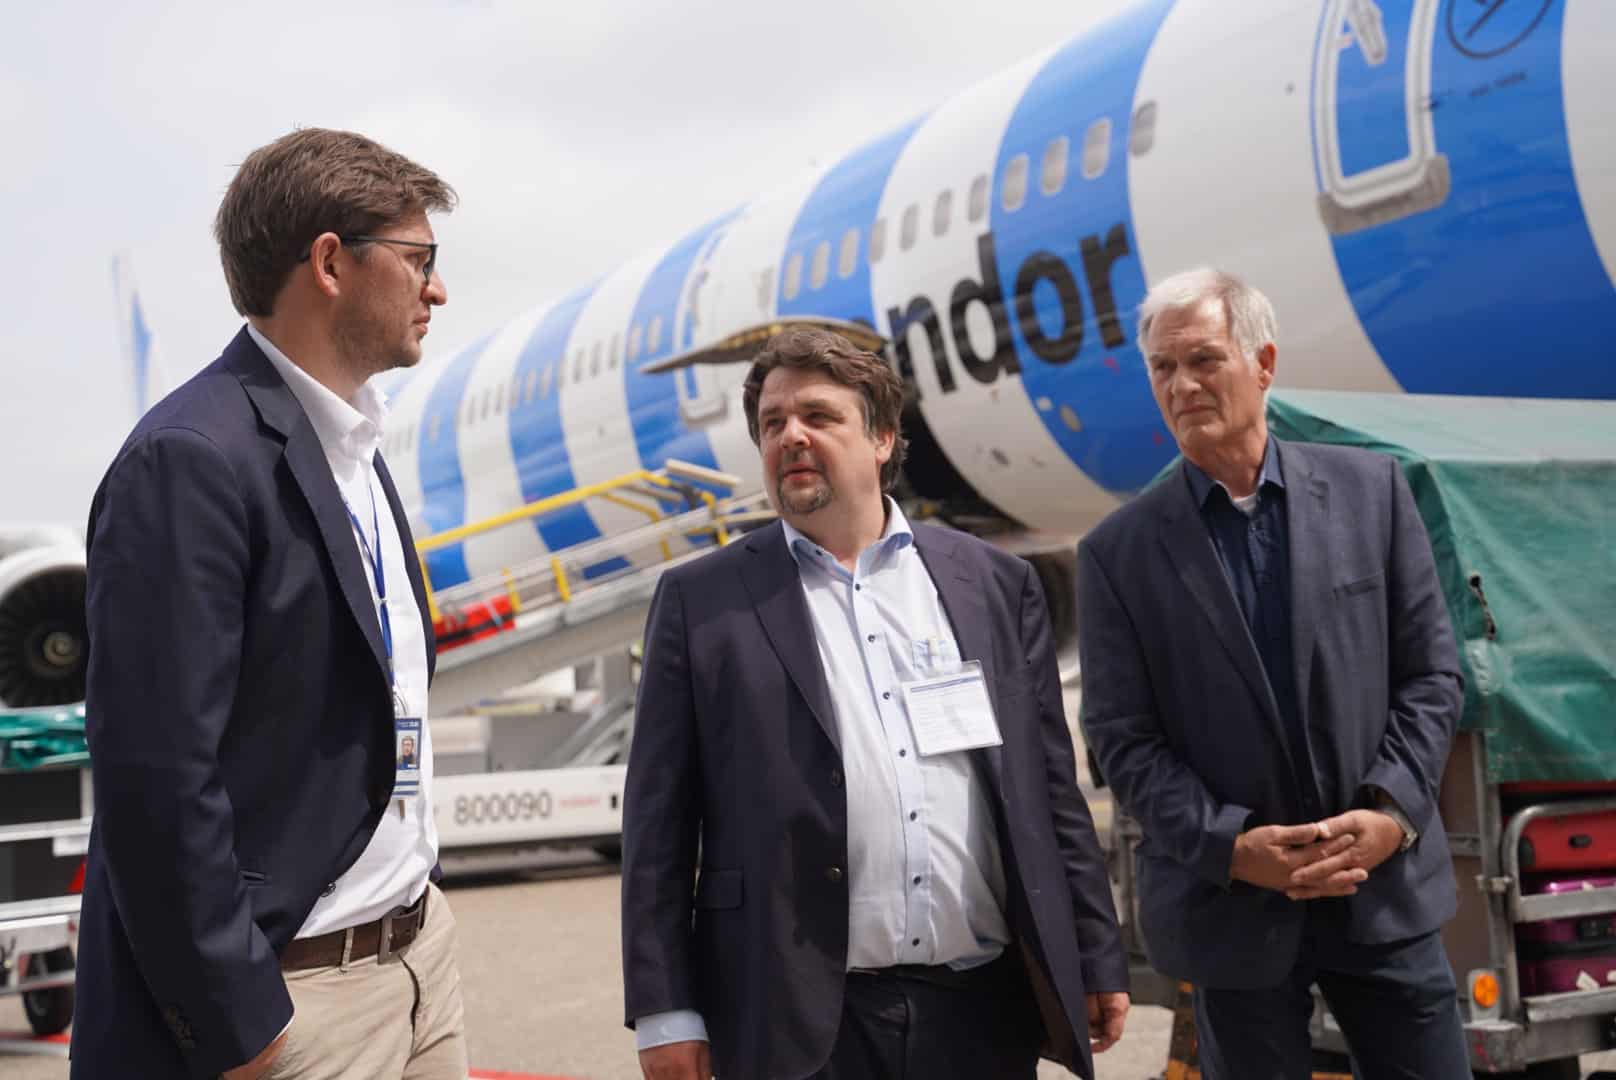 Dennis Radtke MEP en conversación con representantes de la dirección del aeropuerto (de izquierda a derecha): Fabian Zachel (Jefe de Asuntos Públicos), Dennis Radtke MEP (CDU), Peter Nengelten (Oficina Vecinal del Aeropuerto).